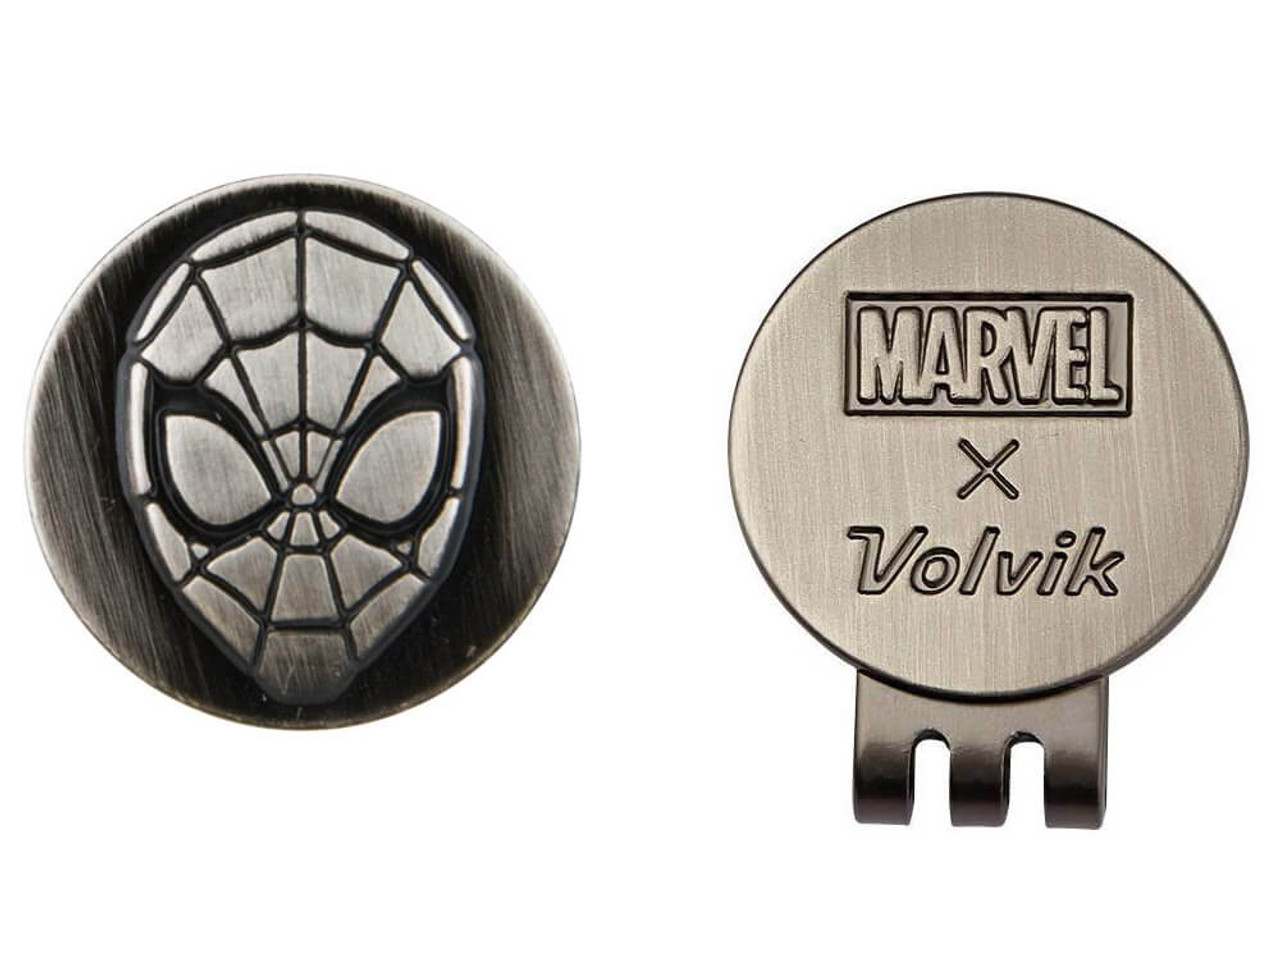 Volvik Marvel Spiderman Golf Balls & Marker (4 Pack)